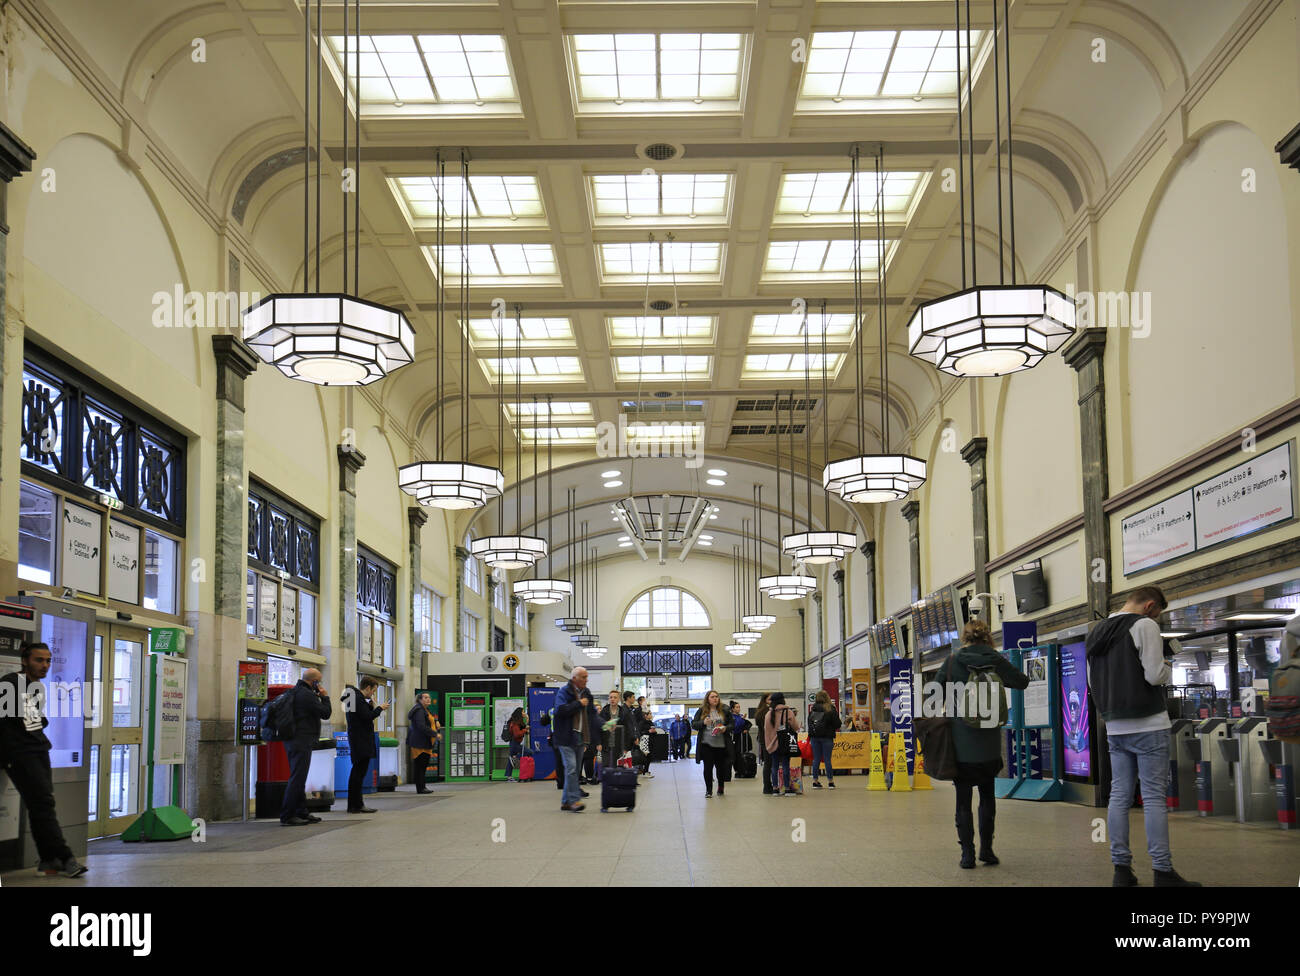 Innenansicht von Cardiff Bahnhof ticket Hall, South Wales, UK. Zeigt die originalen Art déco-Elementen. Stockfoto